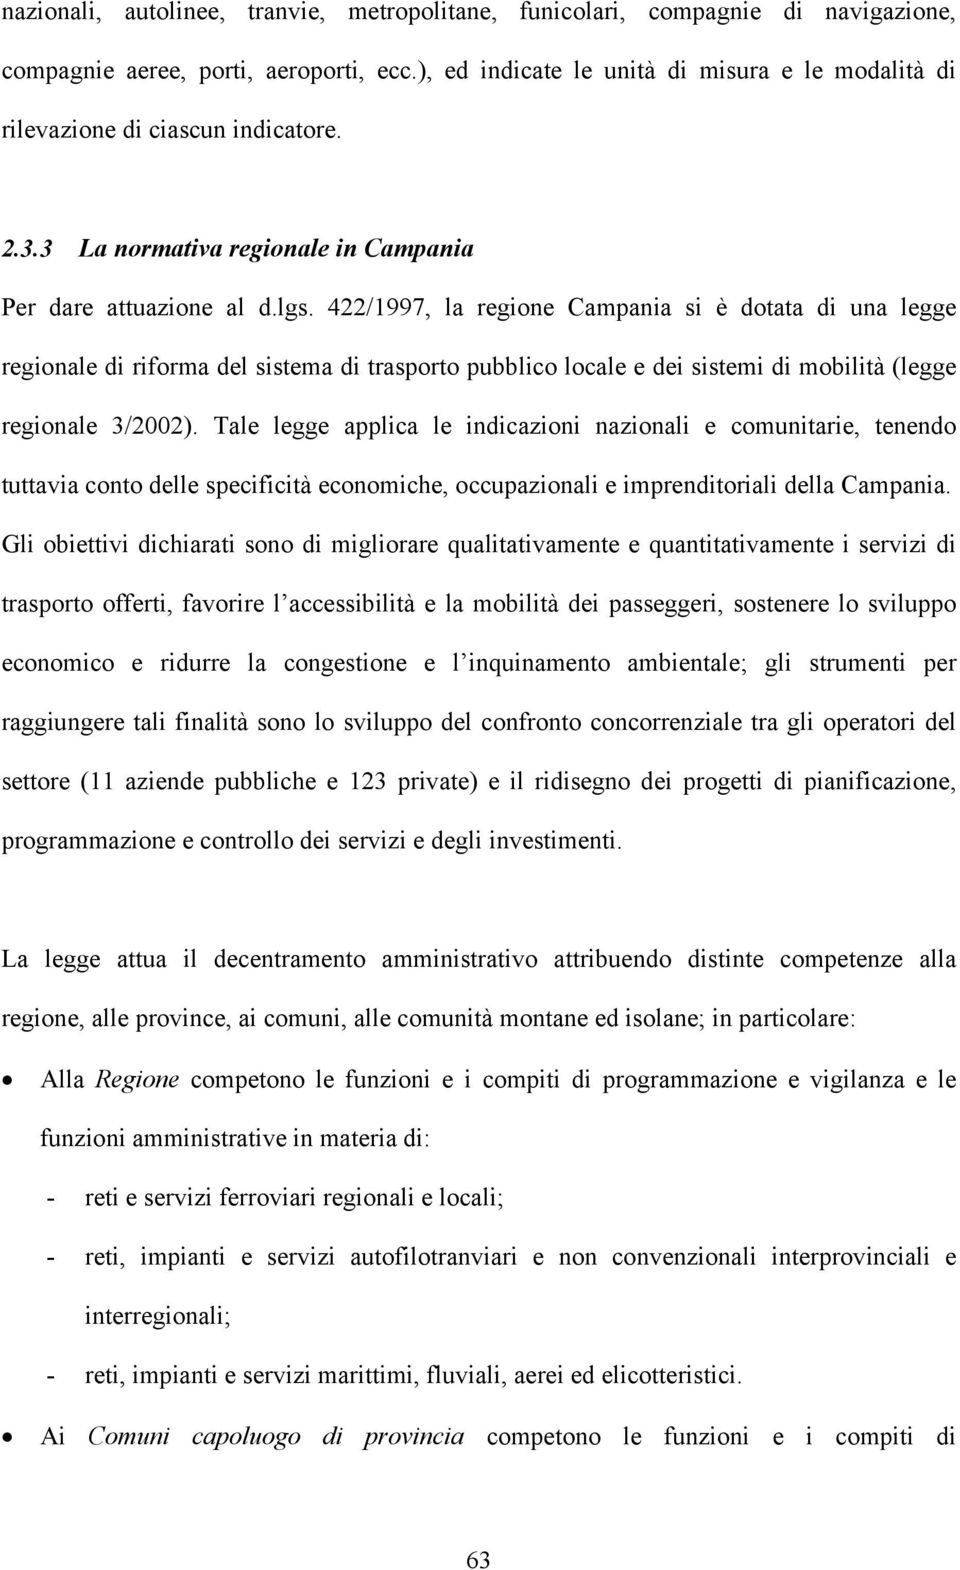 422/1997, la regione Campania si è dotata di una legge regionale di riforma del sistema di trasporto pubblico locale e dei sistemi di mobilità (legge regionale 3/2002).